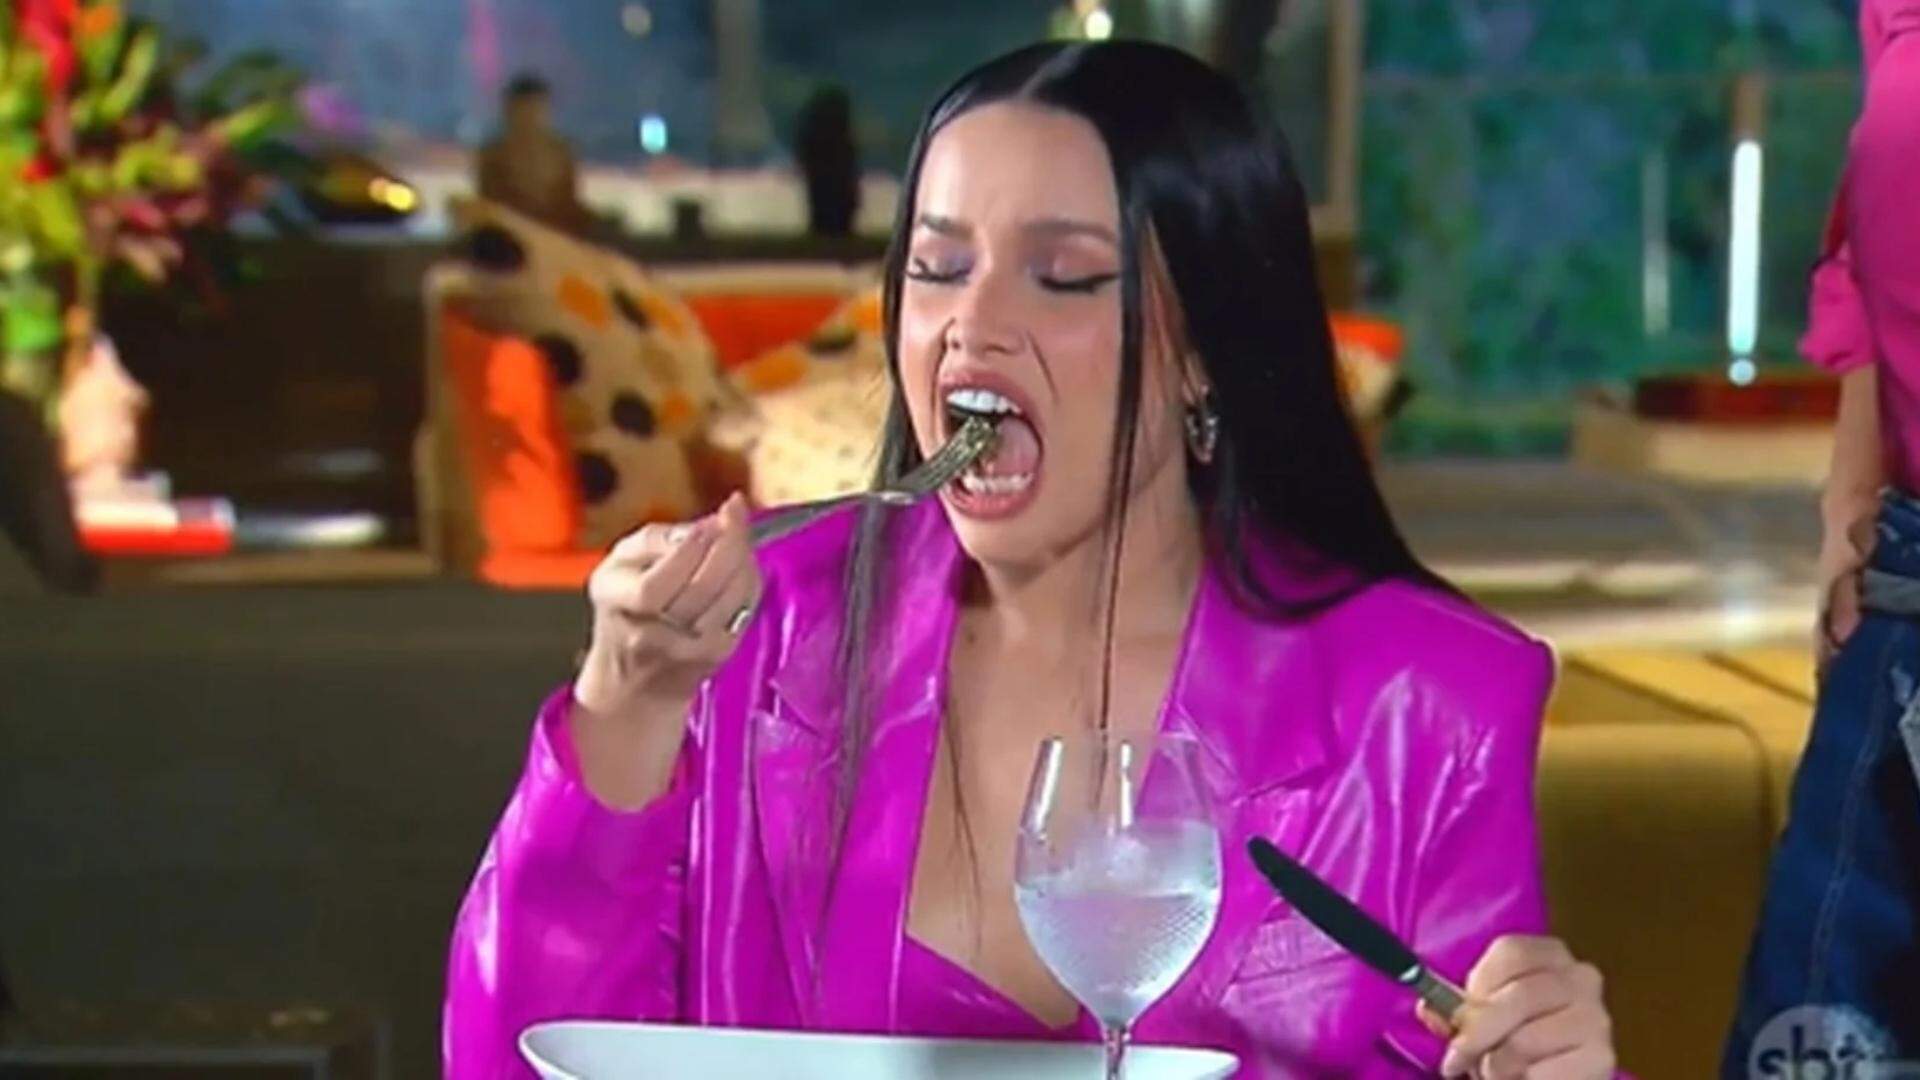 Juliette come baratas durante o Programa da Eliana e surta: “Nunca mais vão me beijar!” - Metropolitana FM